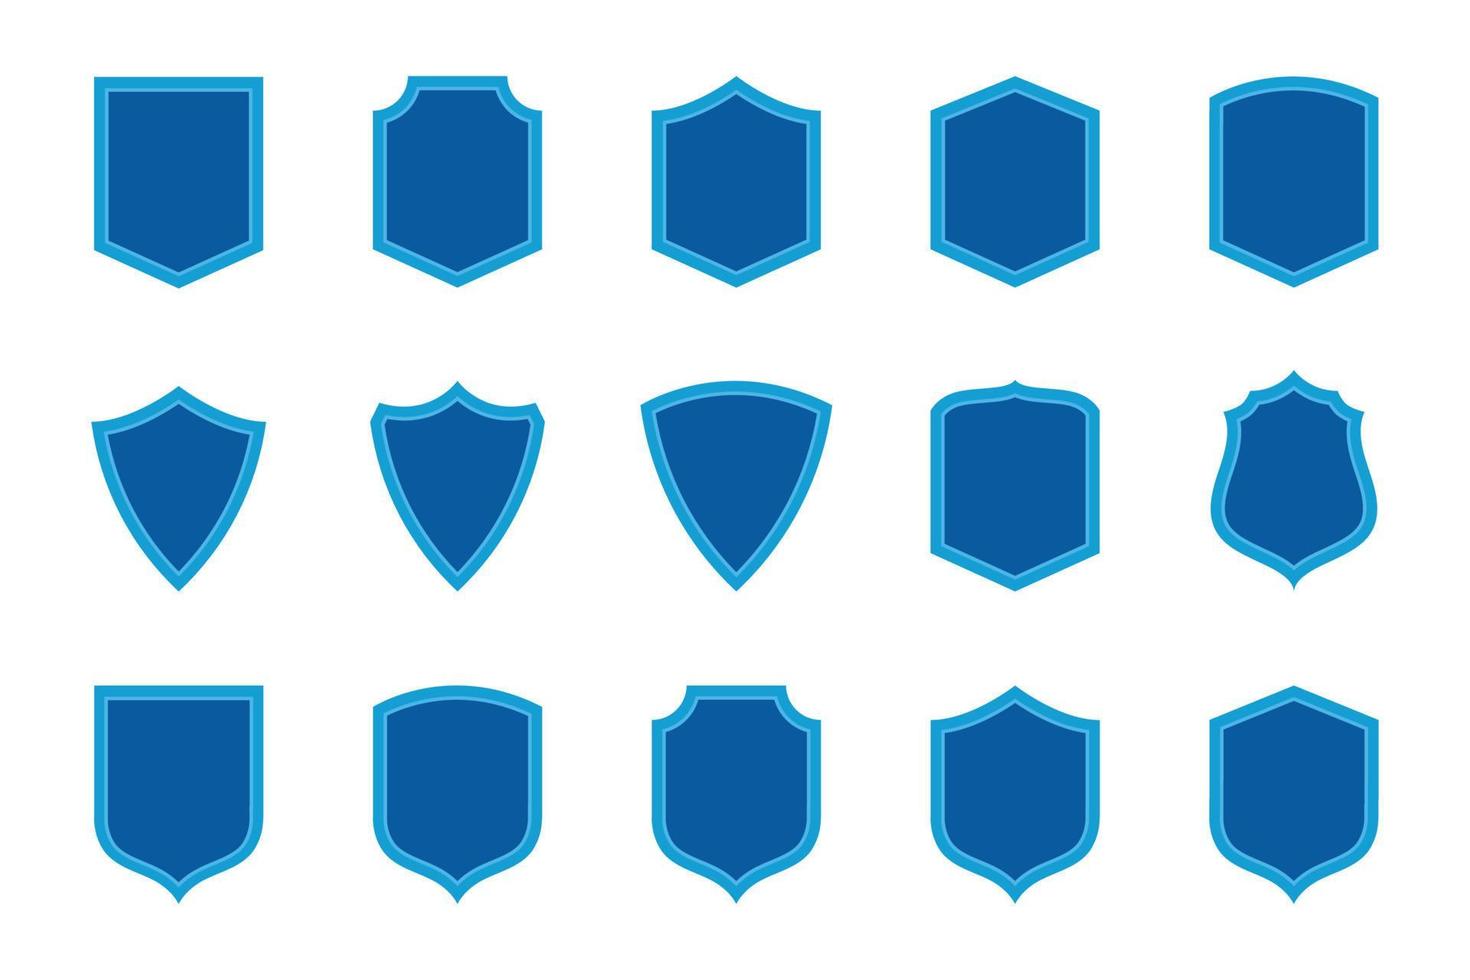 conjunto de azul plano seguridad escudos seguro y proteccion ilustración para tu web sitio diseño, juego, logo, aplicación, y ui vector